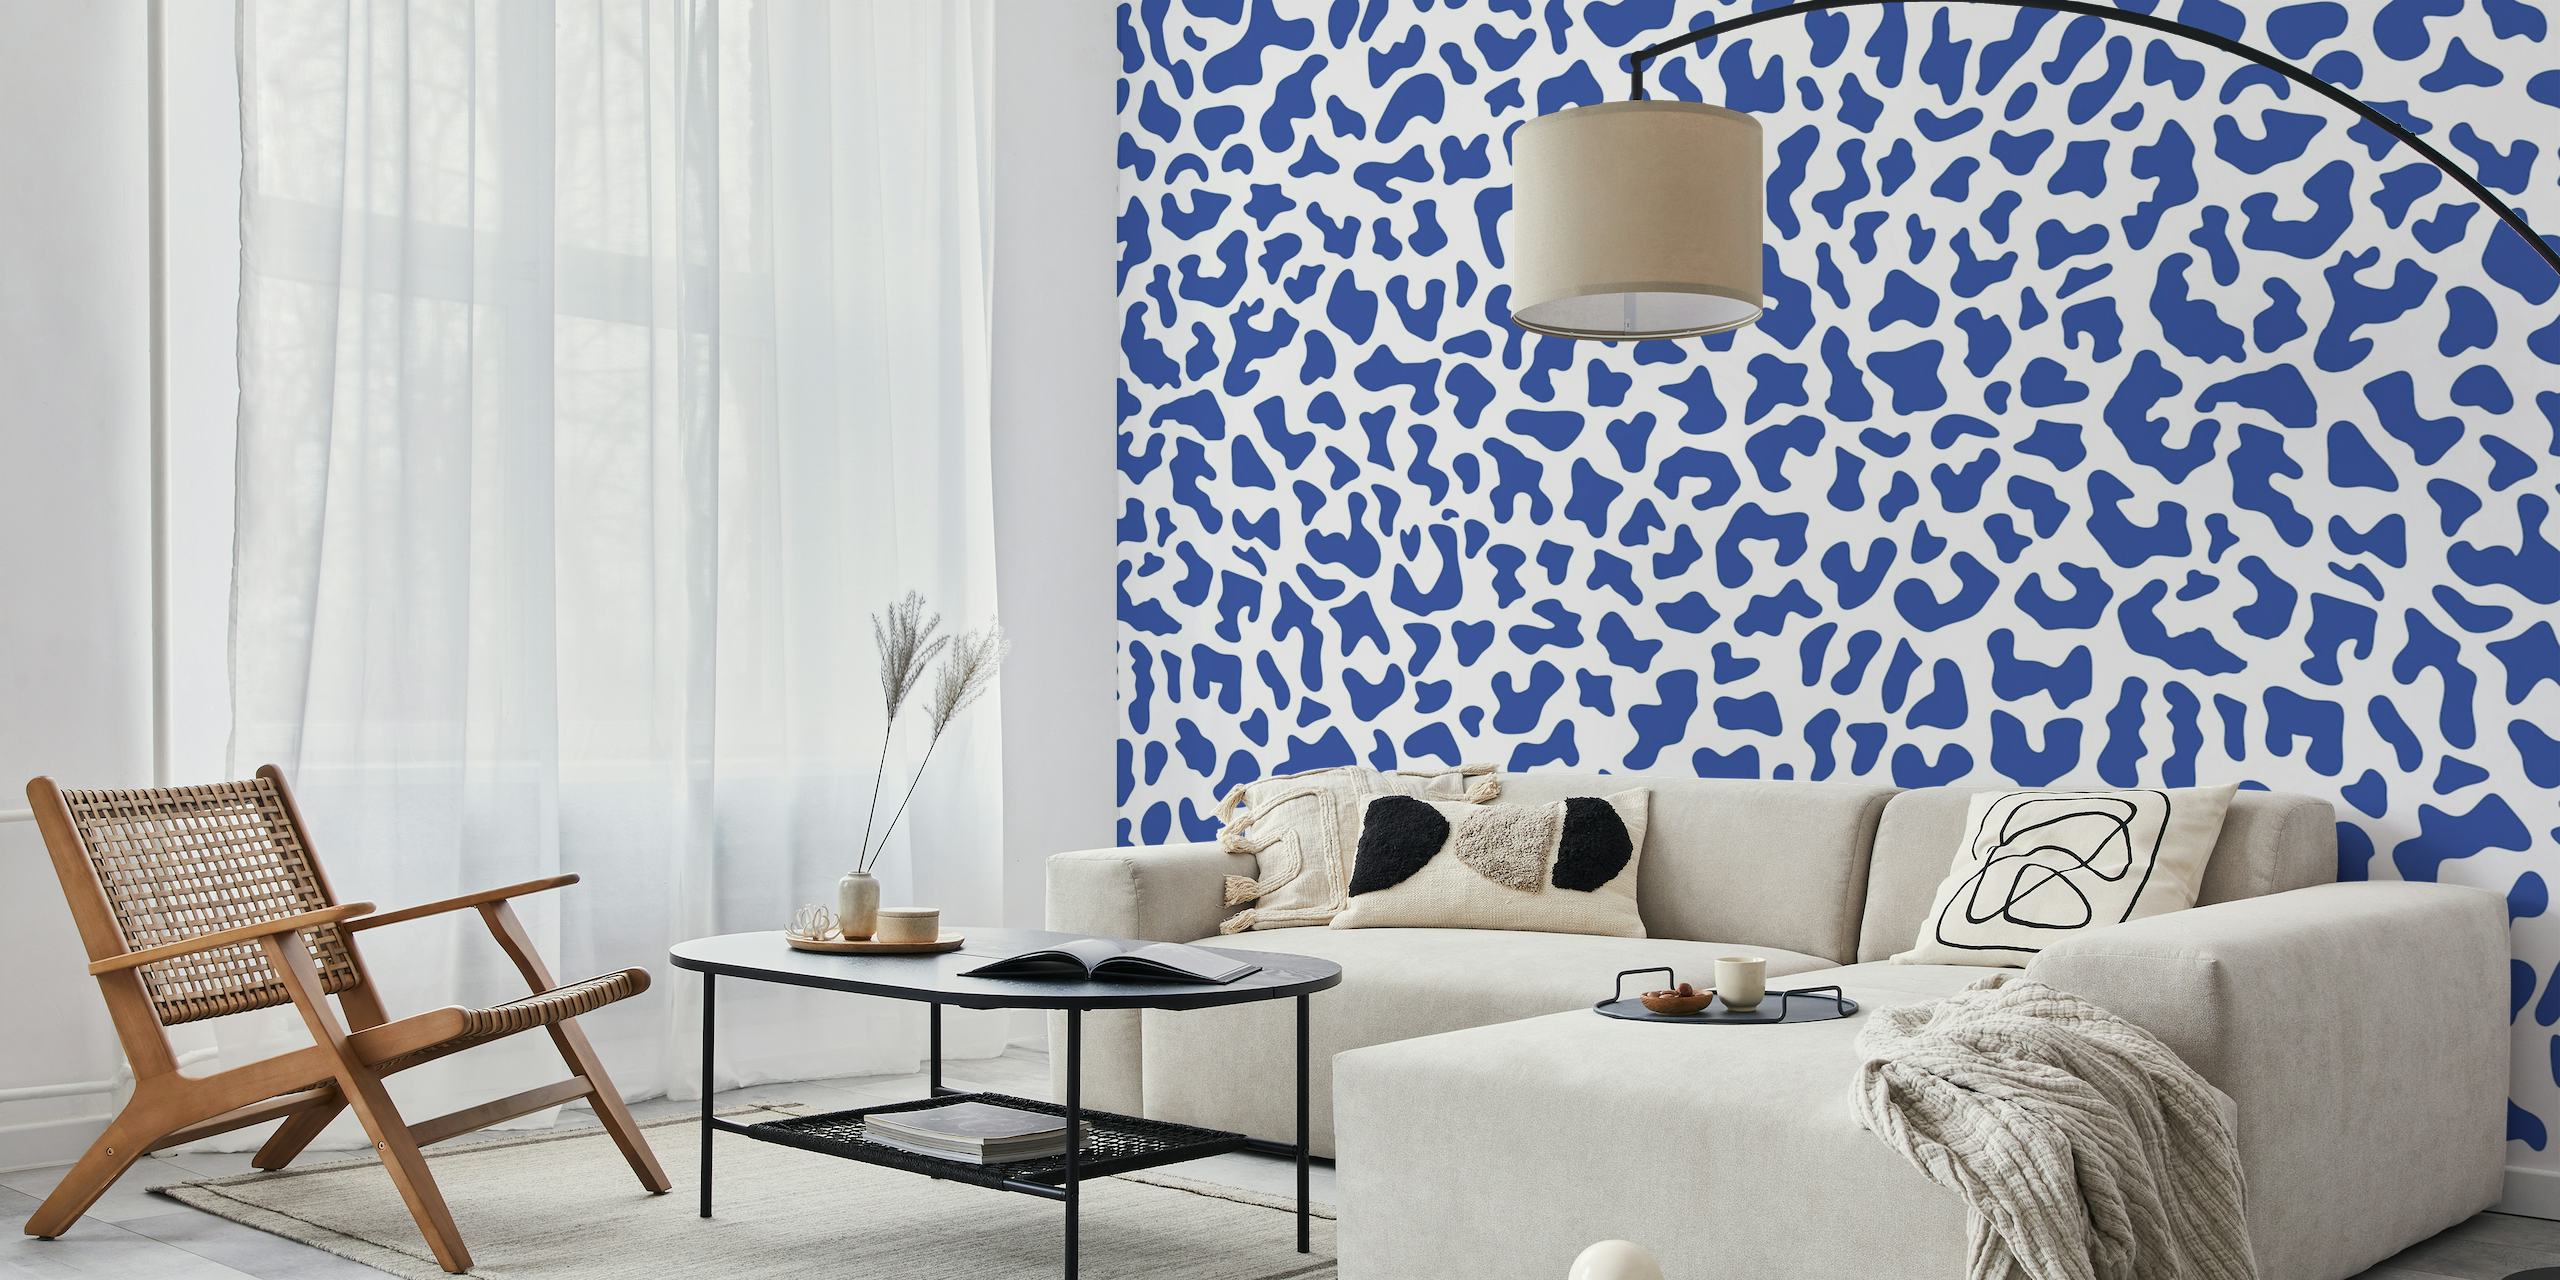 Blau-weißes Wandbild mit Leopardenmuster